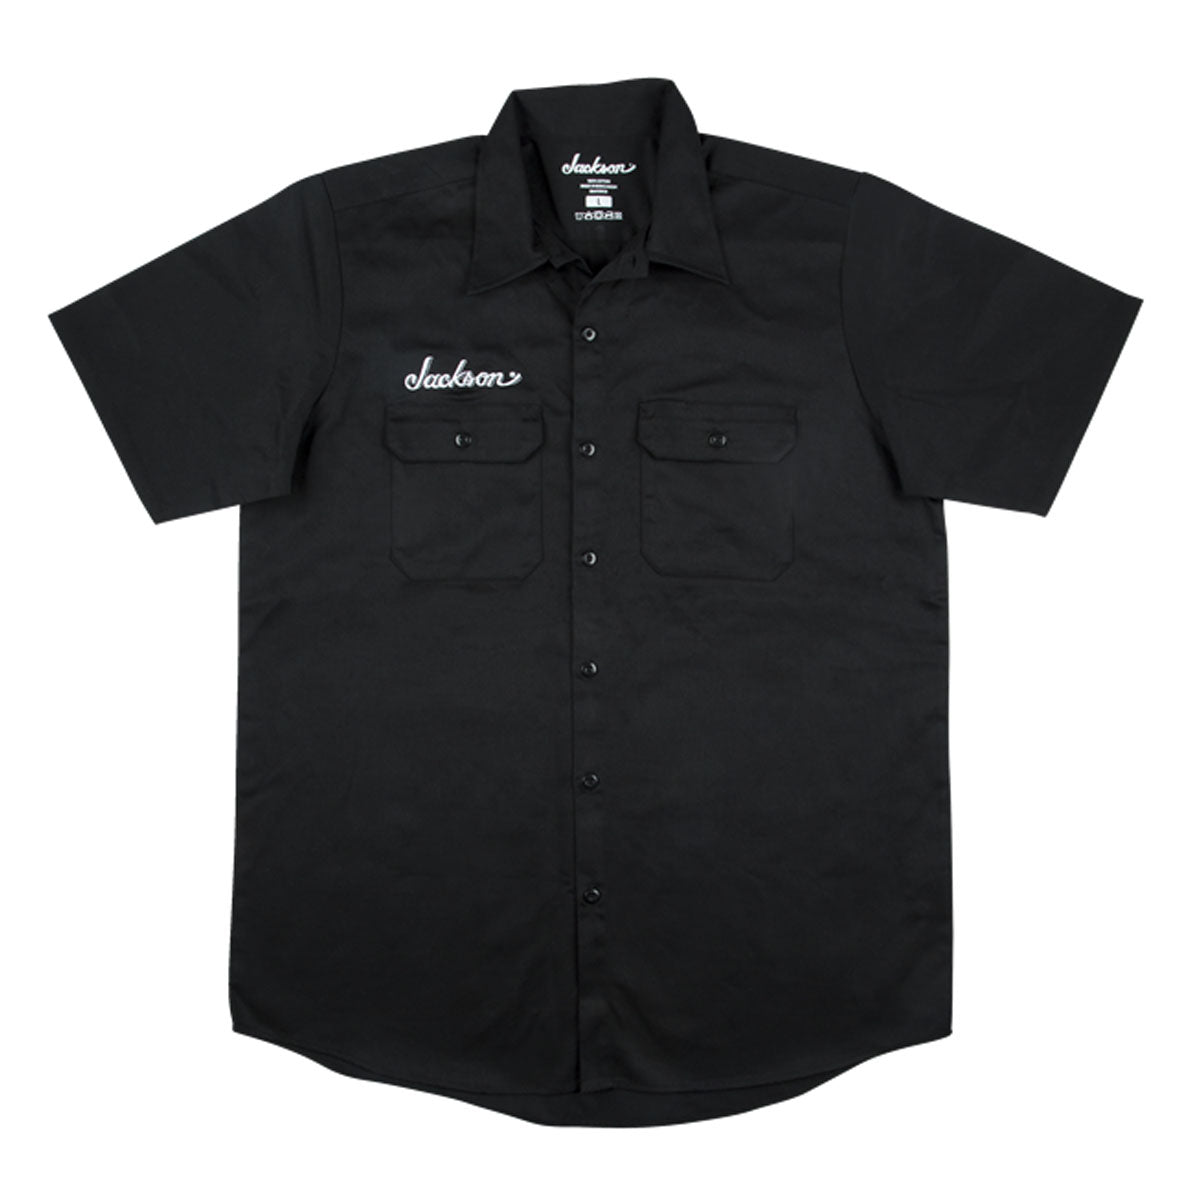 Jackson Logo Mens Work Shirt, Black, M Medium - 2999578506